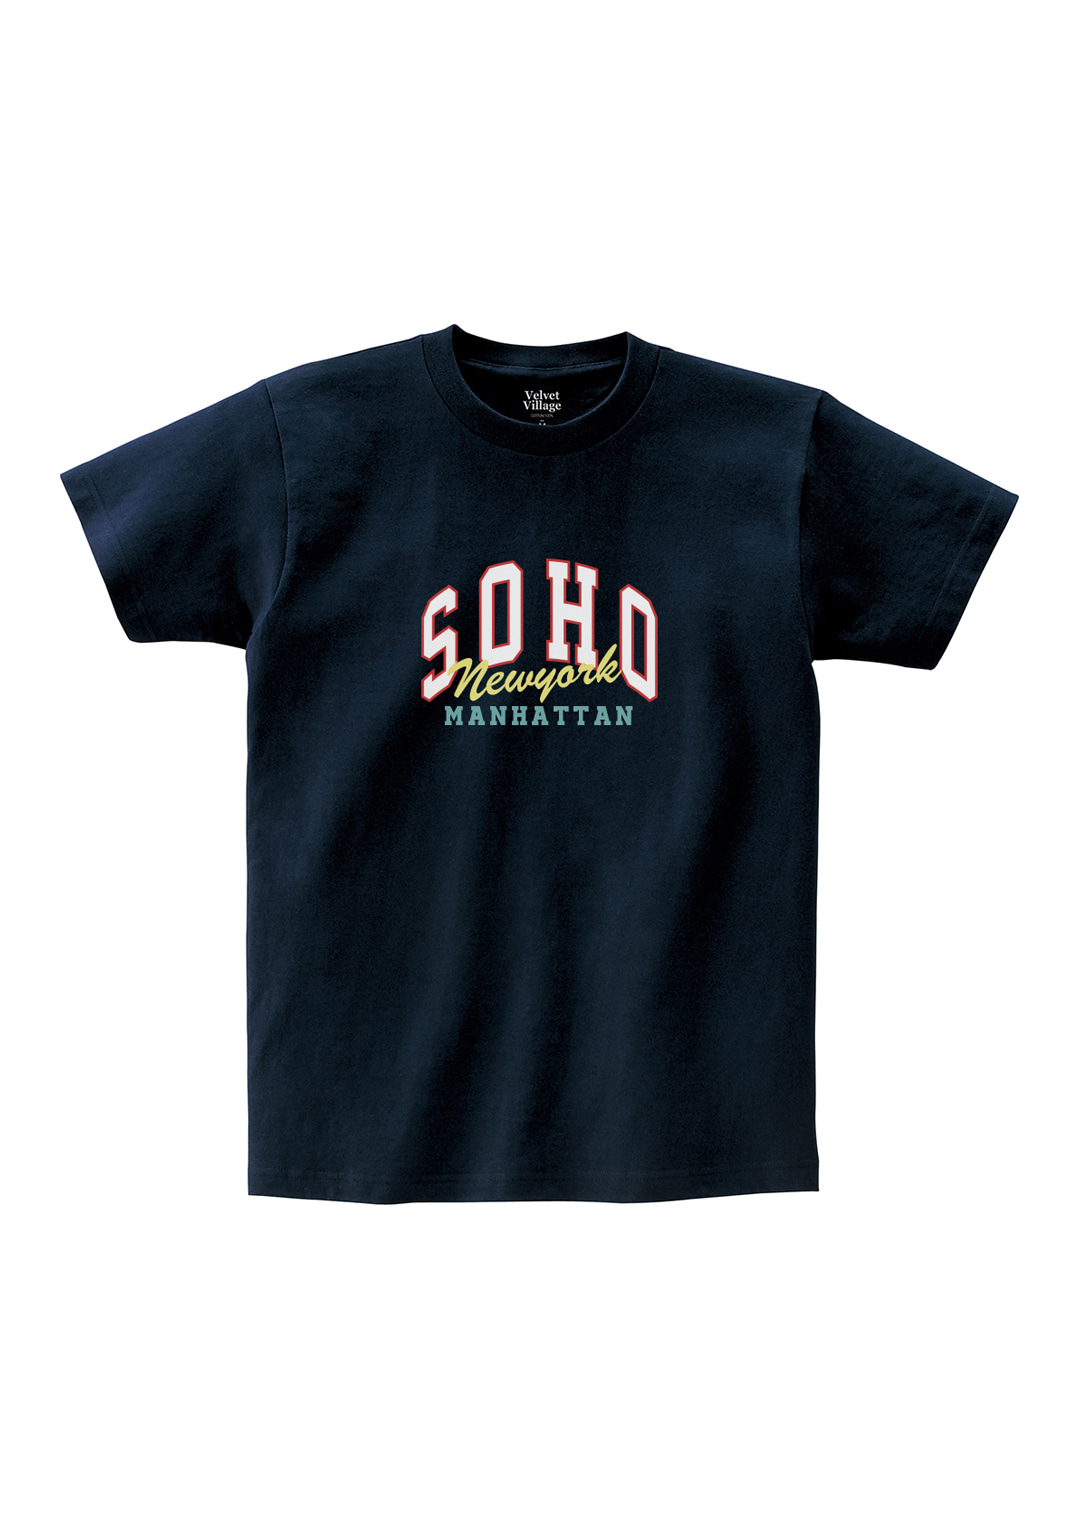 Soho T-shirts (Navy)